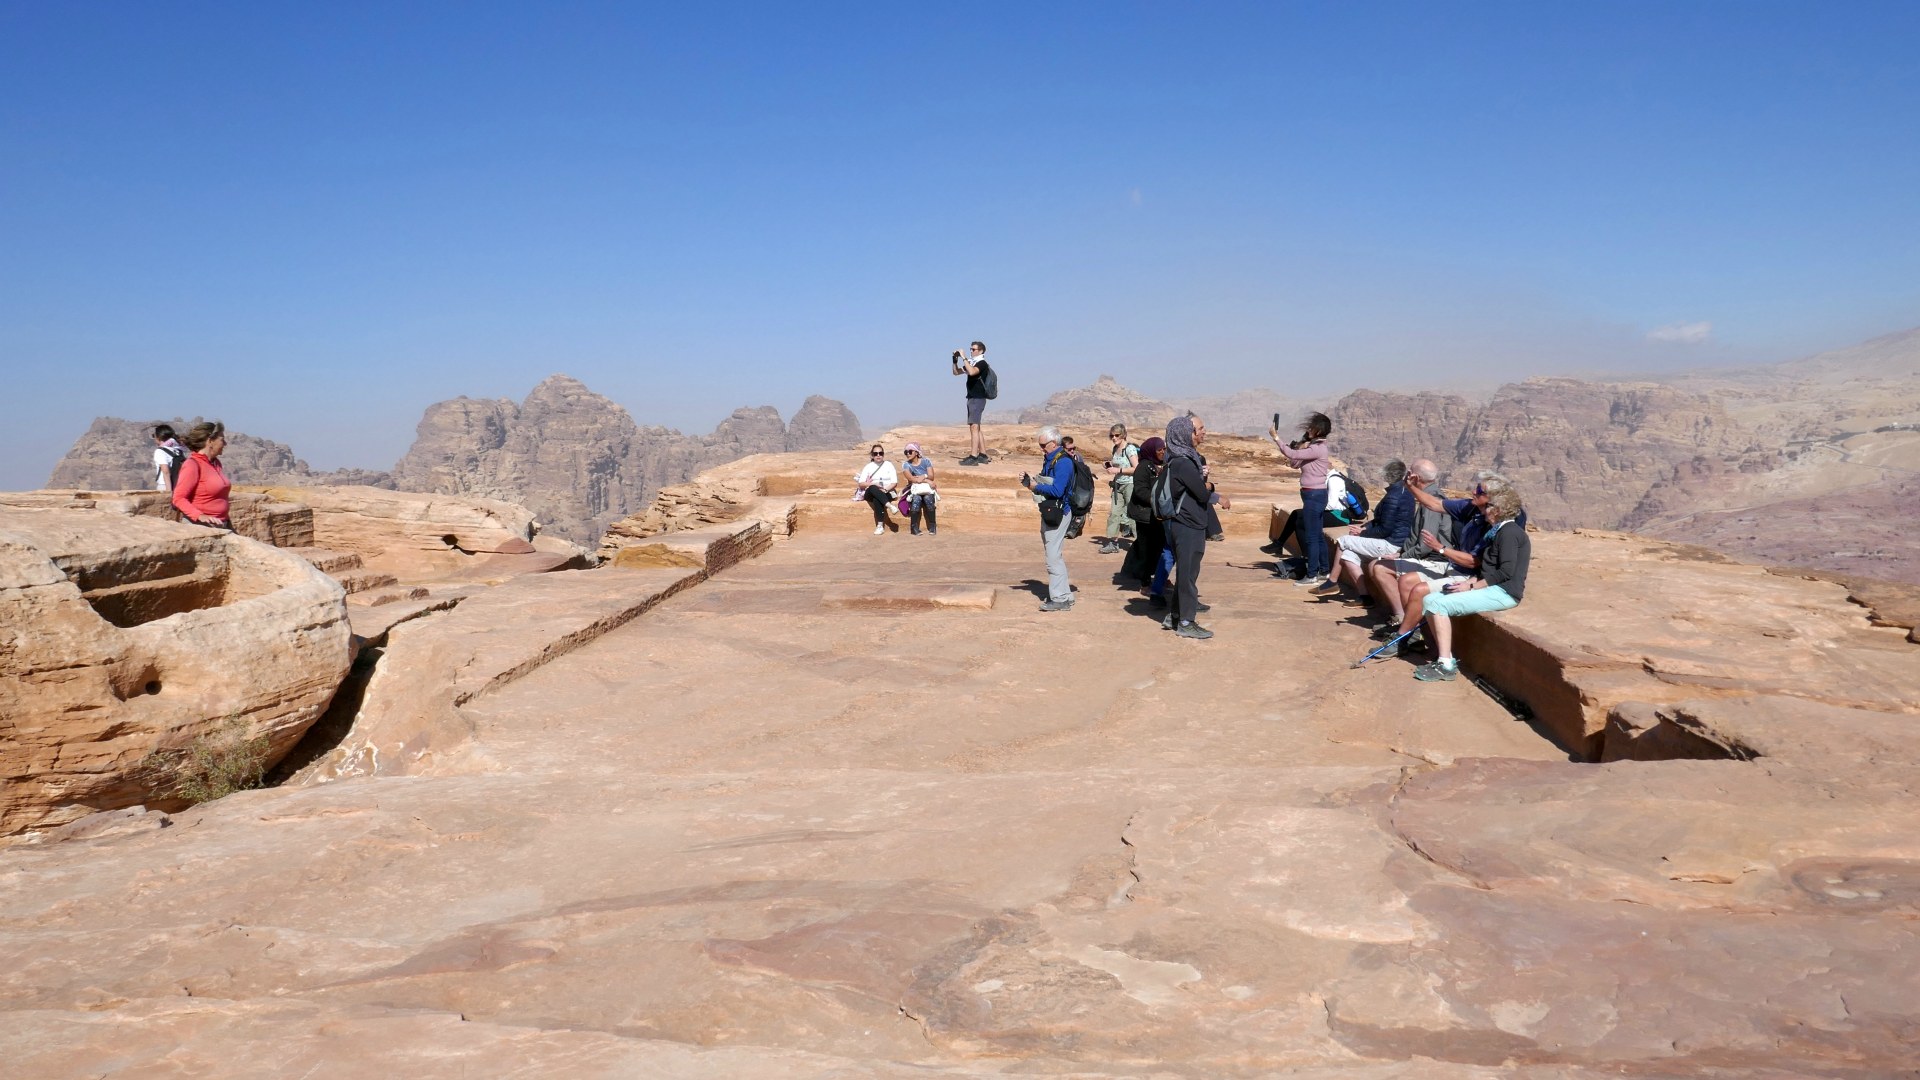 High Place of Sacrifice, Petra